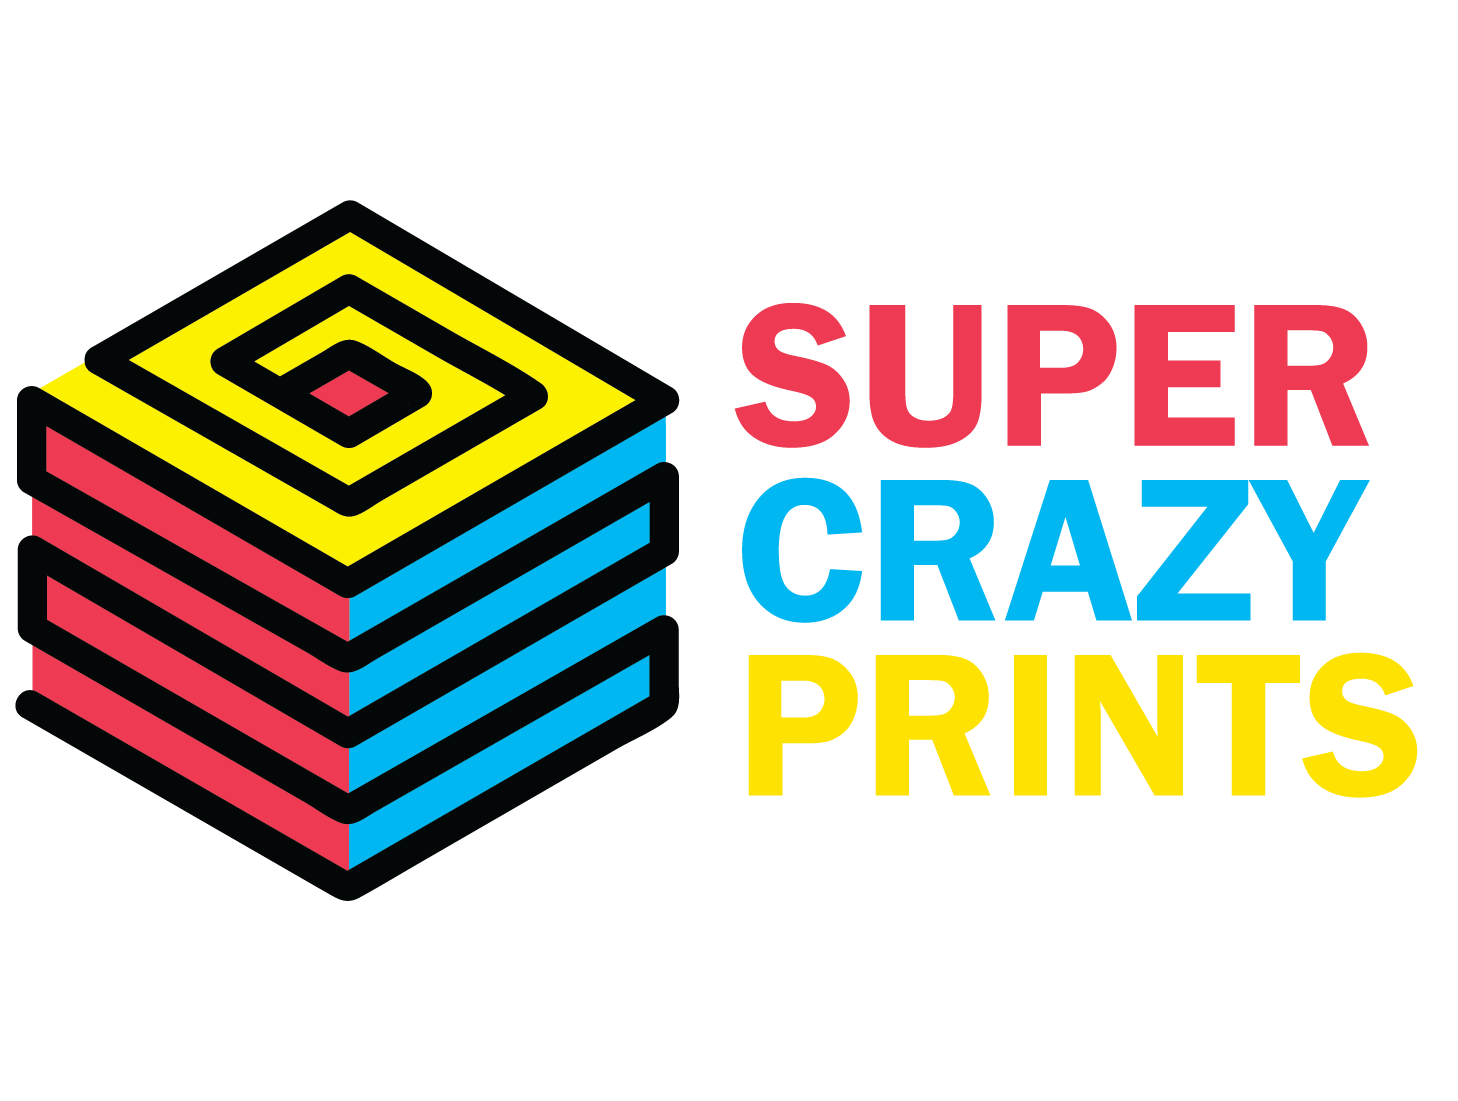 Supercrazyprints.com